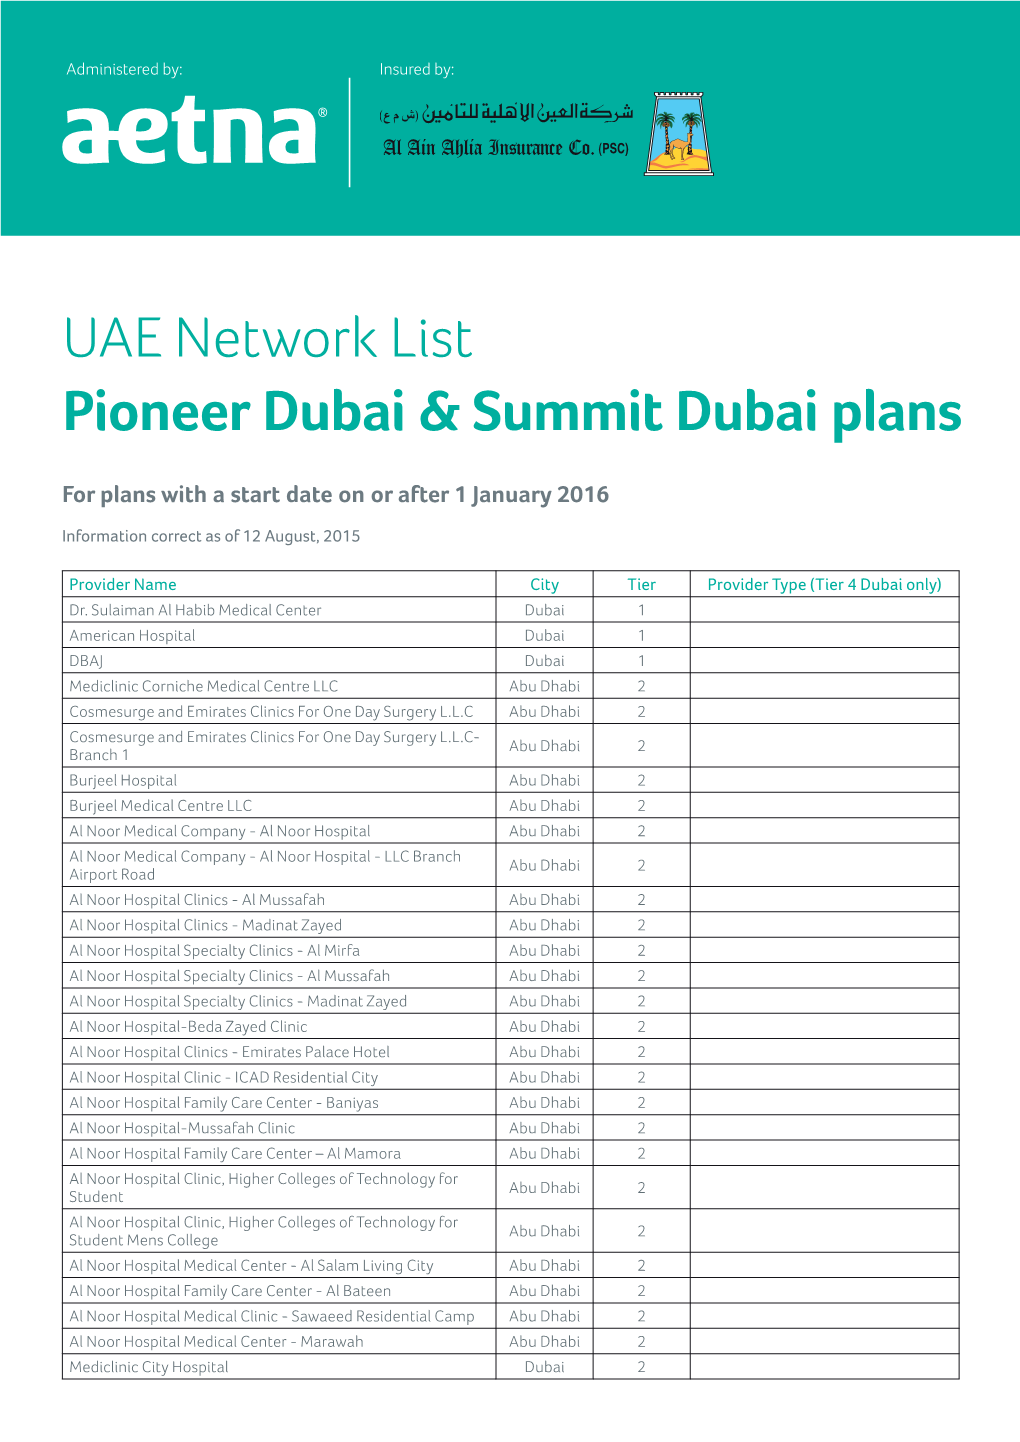 UAE Network List Pioneer Dubai & Summit Dubai Plans